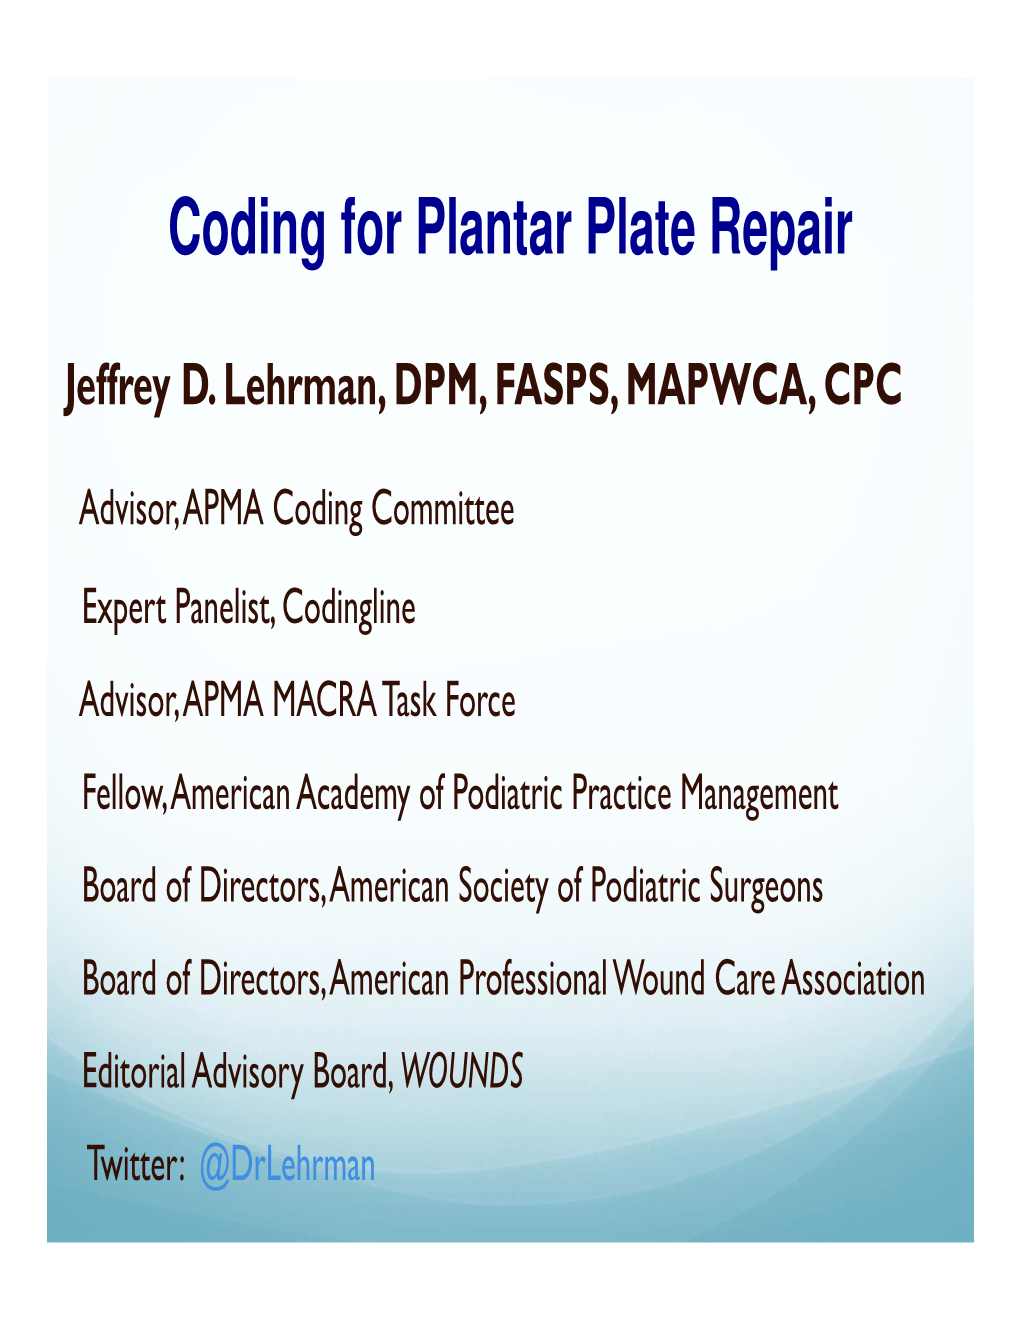 Plantar Plate Repair